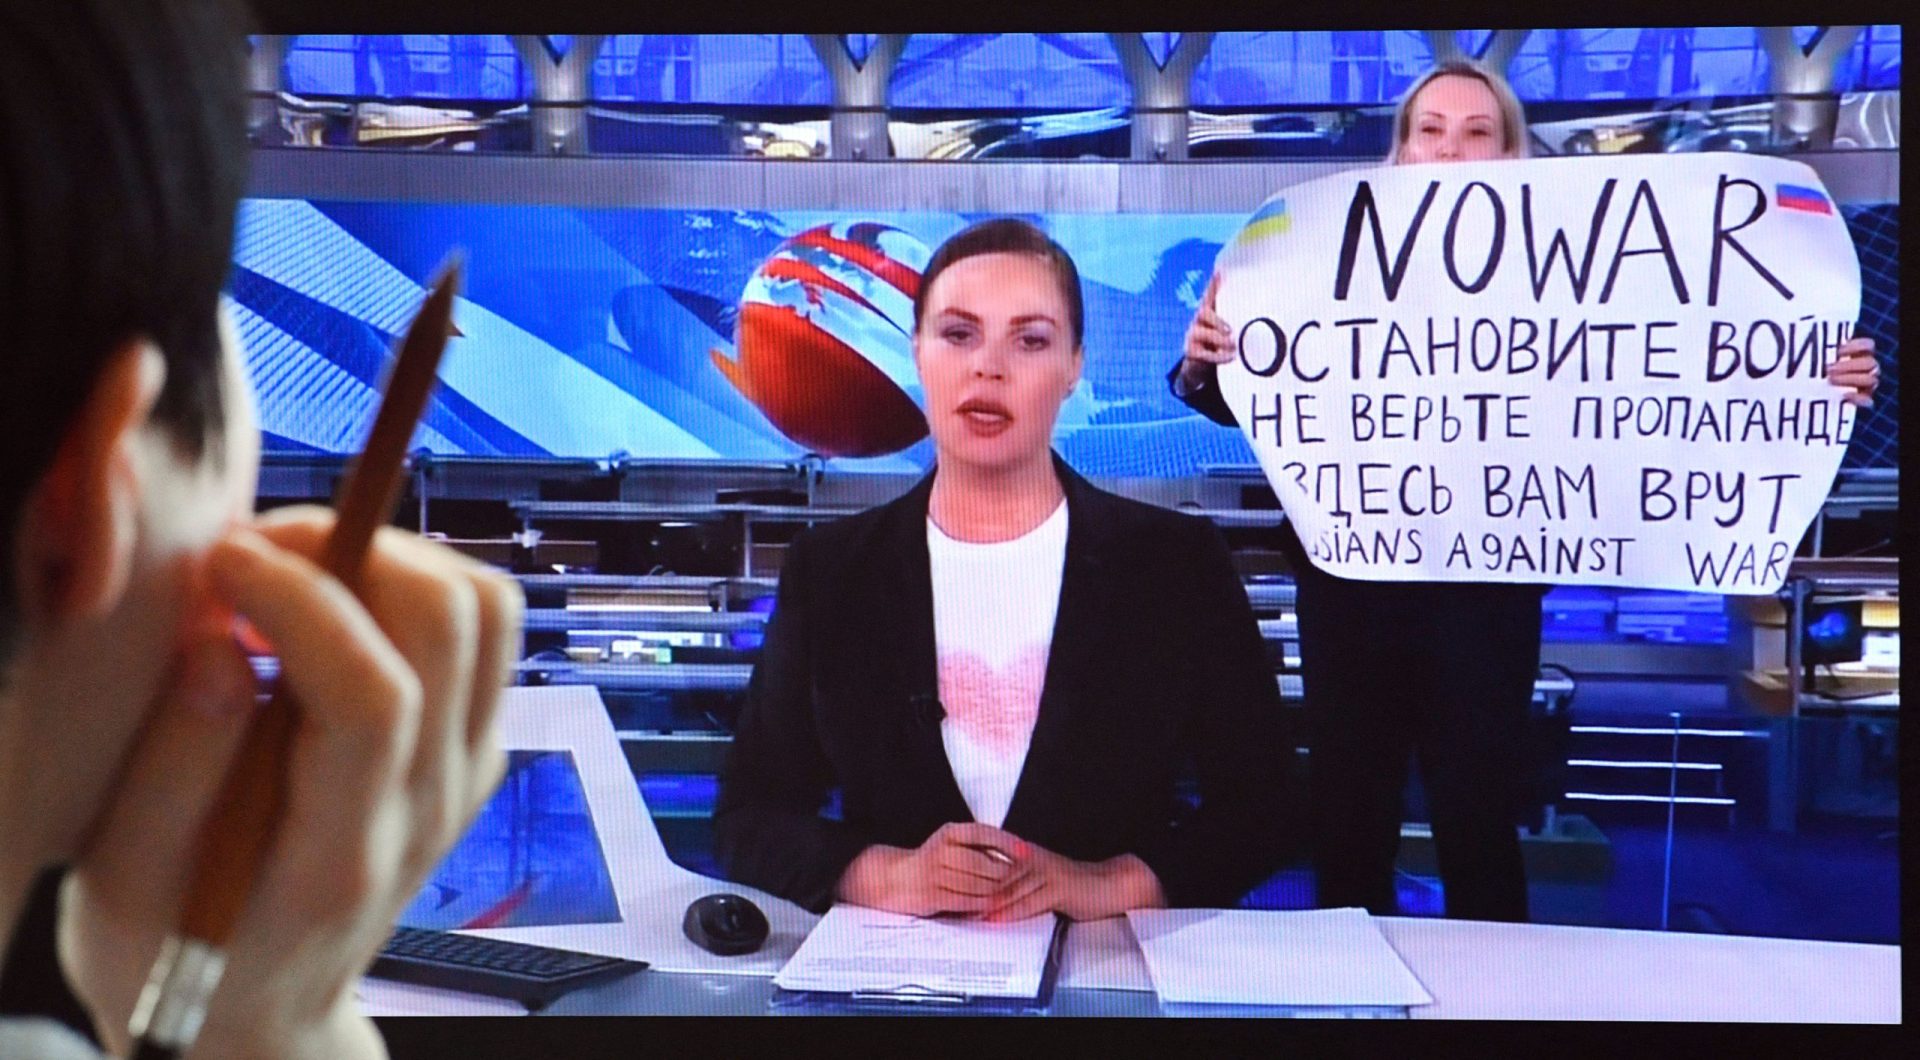 Jornalista que apareceu com cartaz contra Moscovo em direto num canal russo está desaparecida